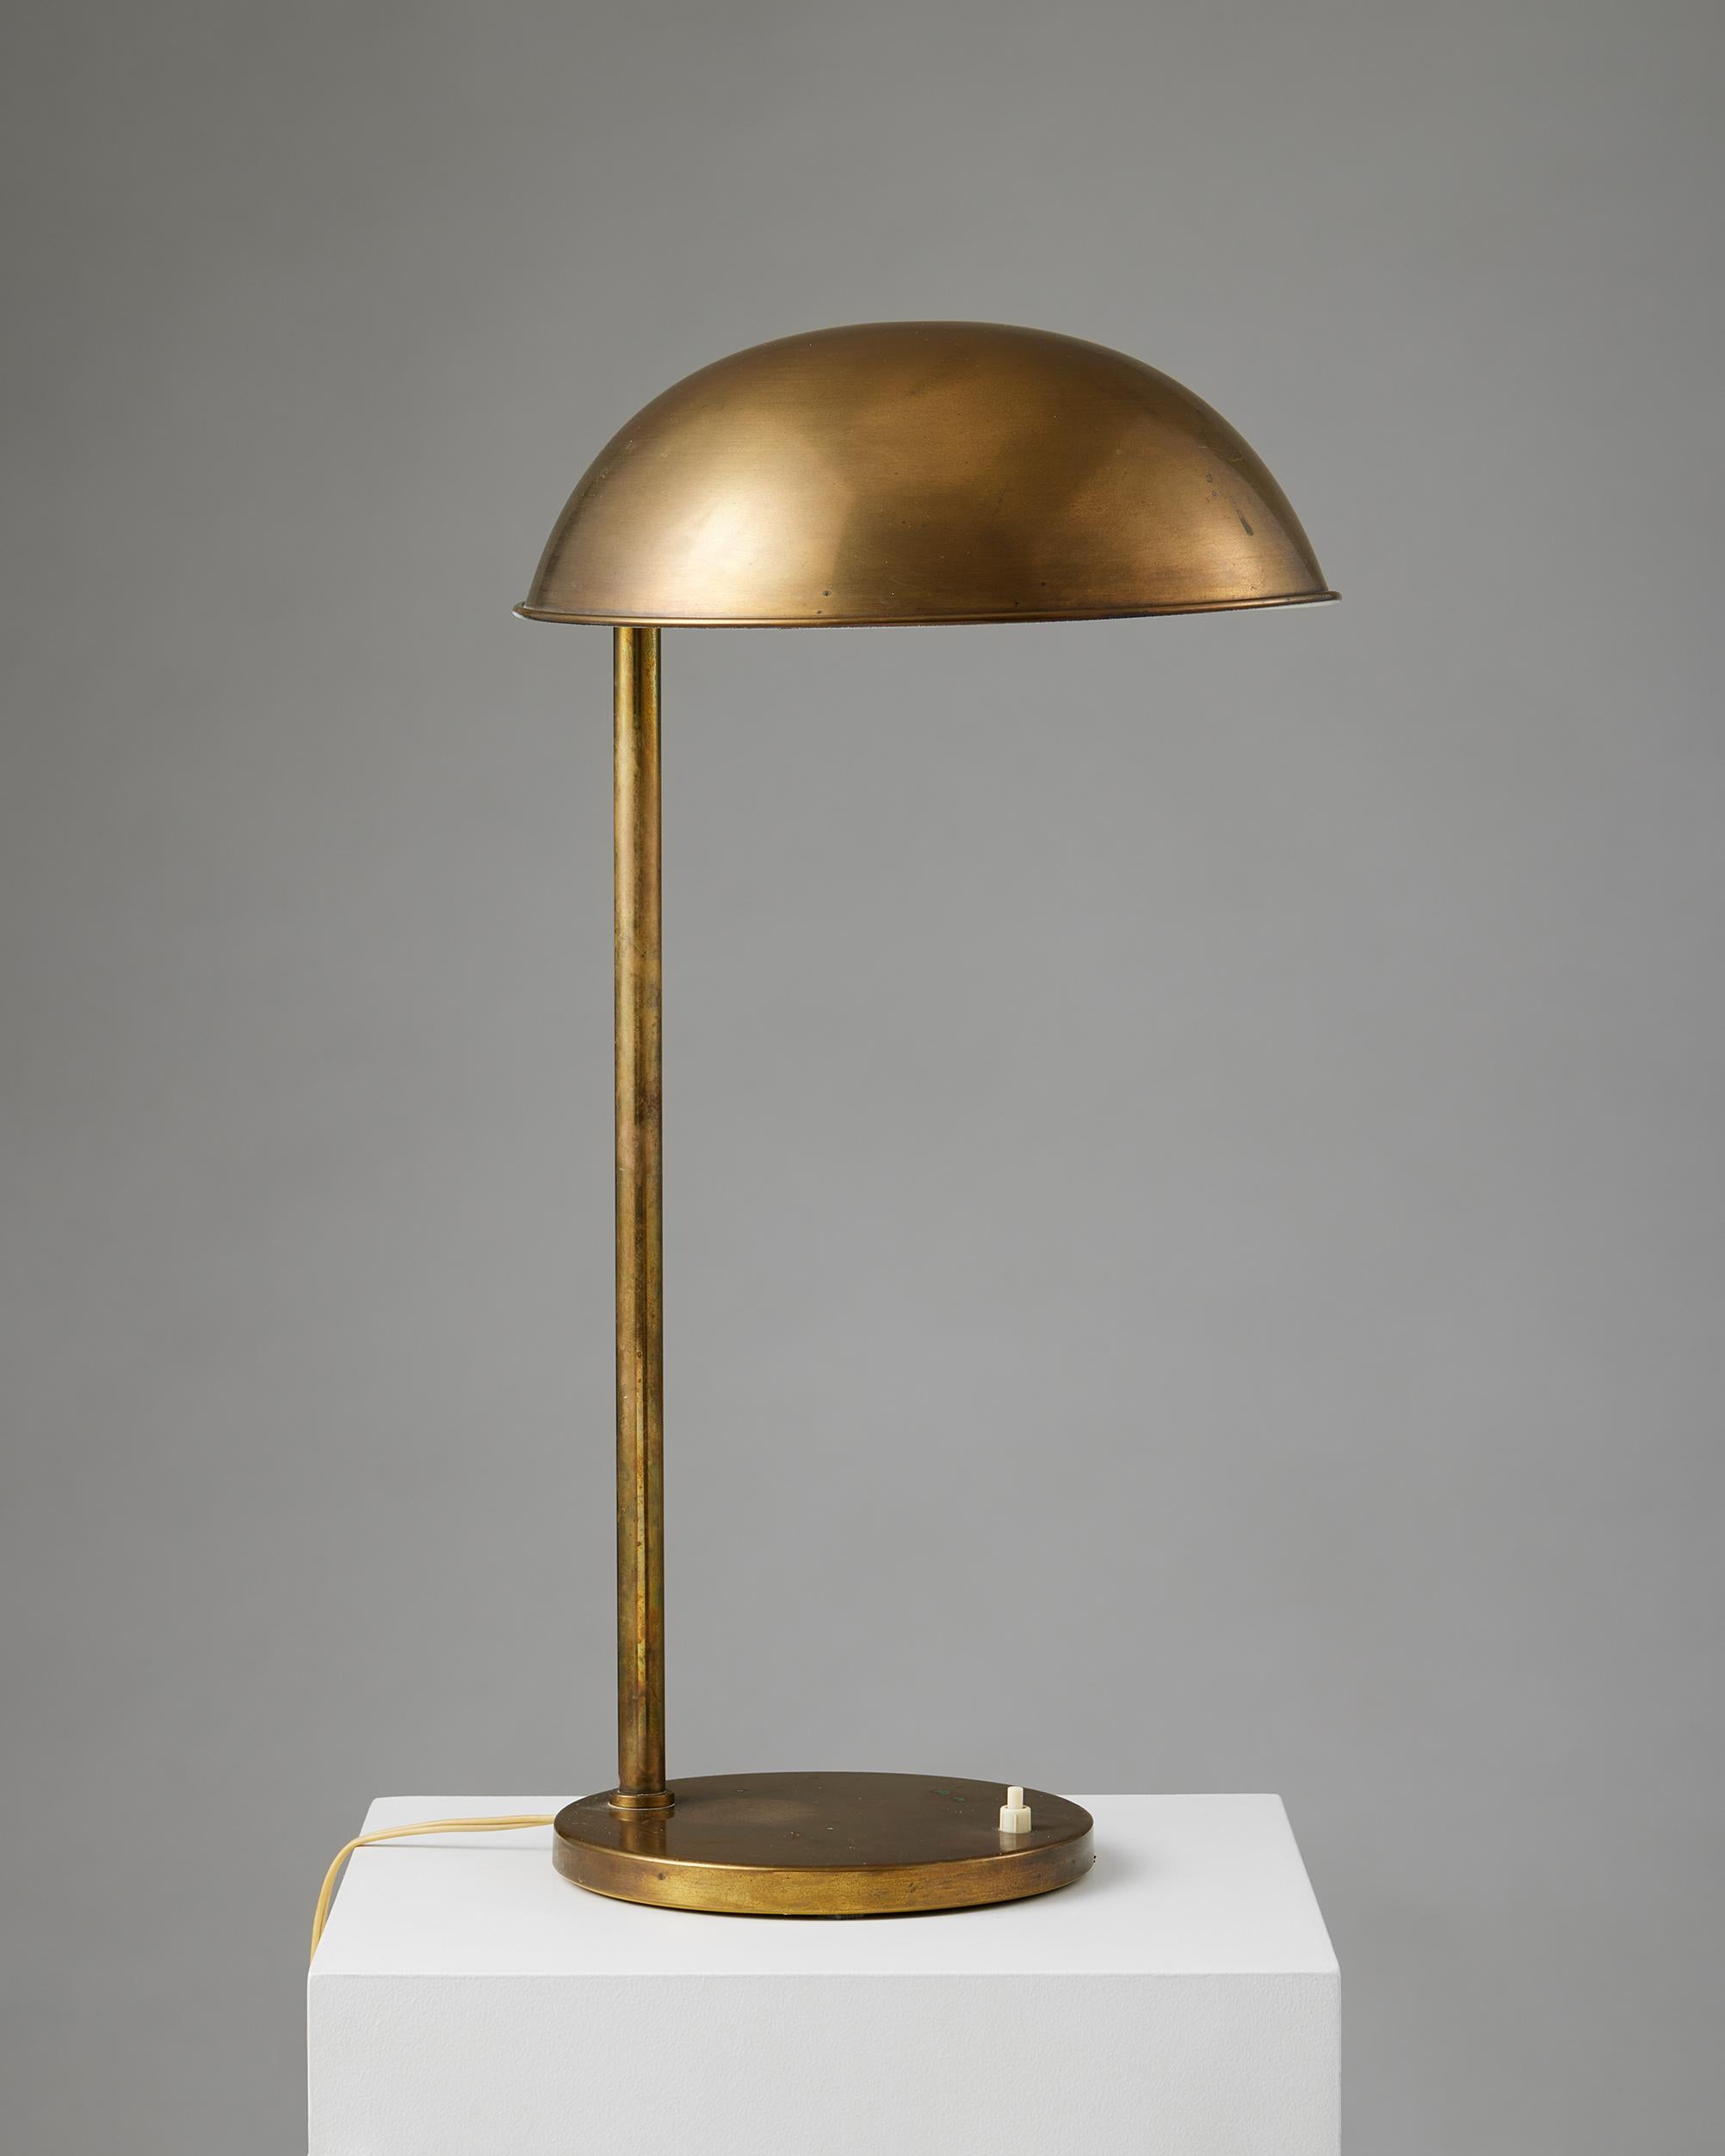 Lampe de table, anonyme,
Danemark, années 1960.

En laiton.

H : 61 cm
Diamètre de la base : 21,5 cm
Diamètre de l'abat-jour : 31 cm